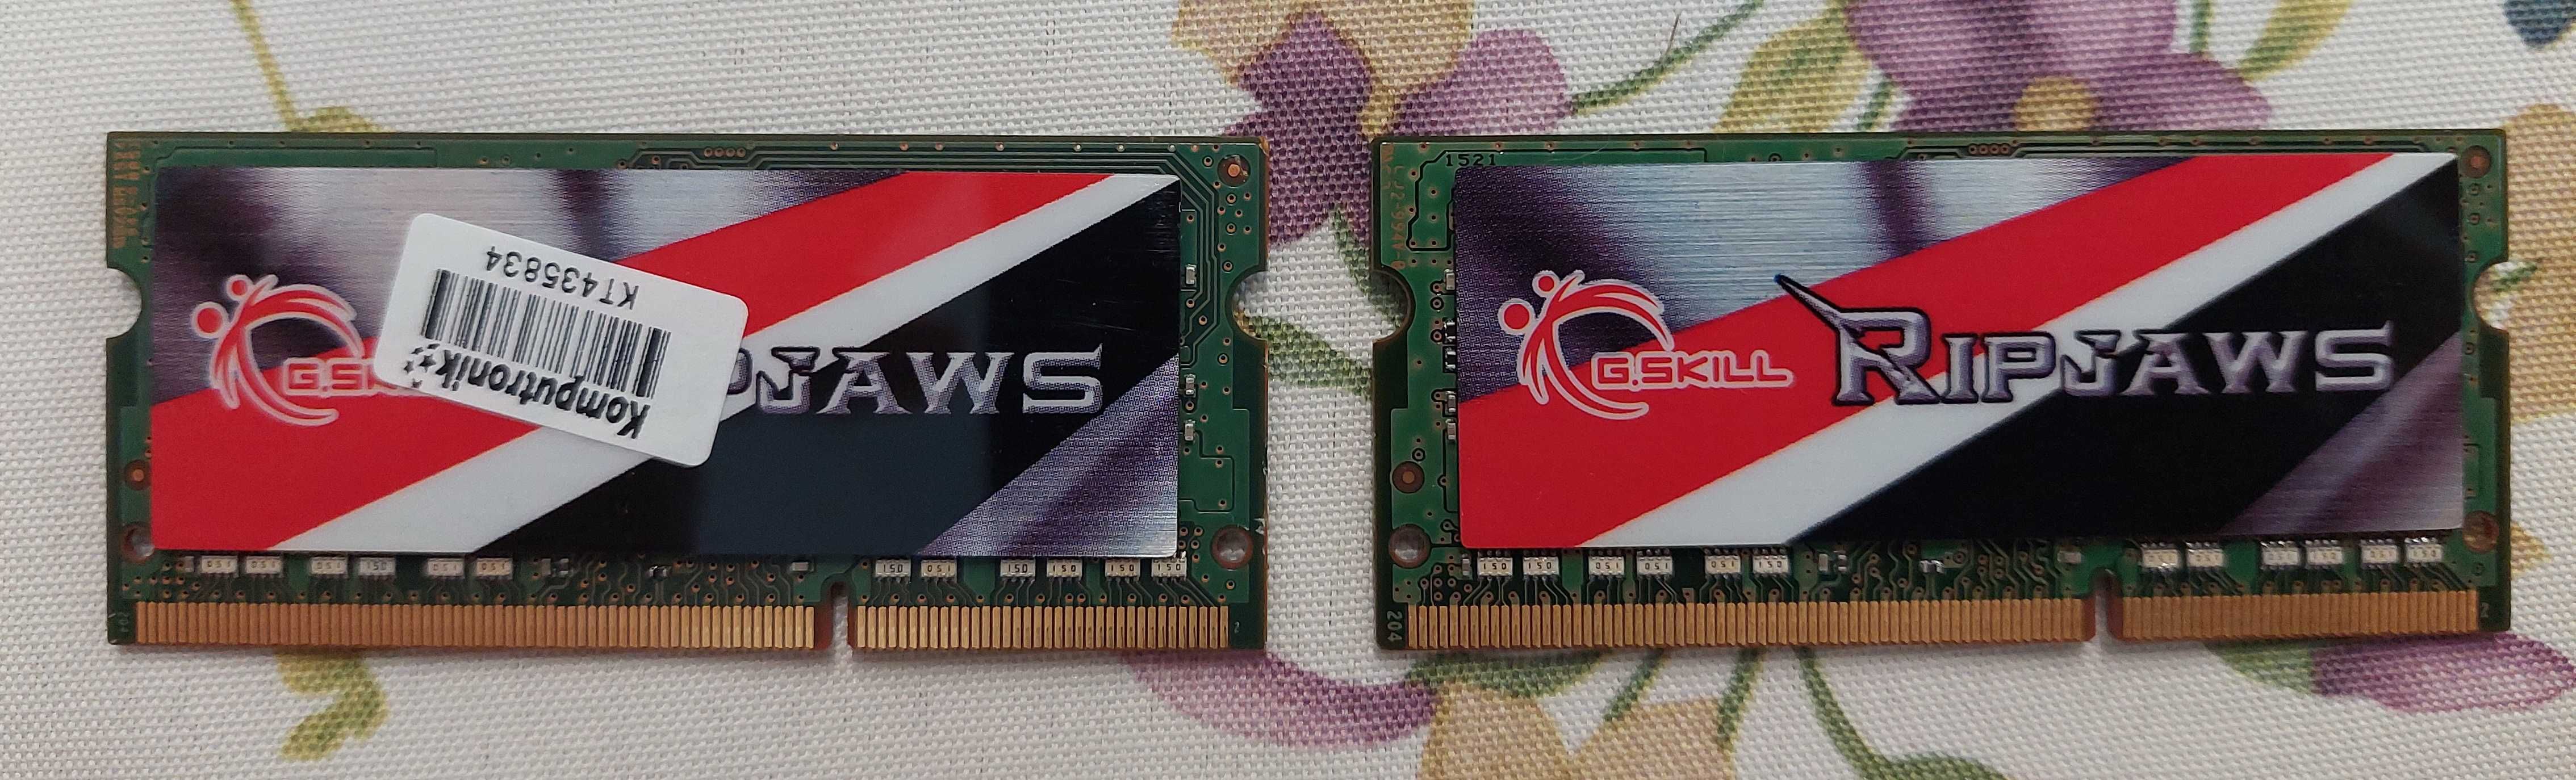 Pamięć RAM G.Skill F3-1600C9D-8GRSL 8GB 2x4GB